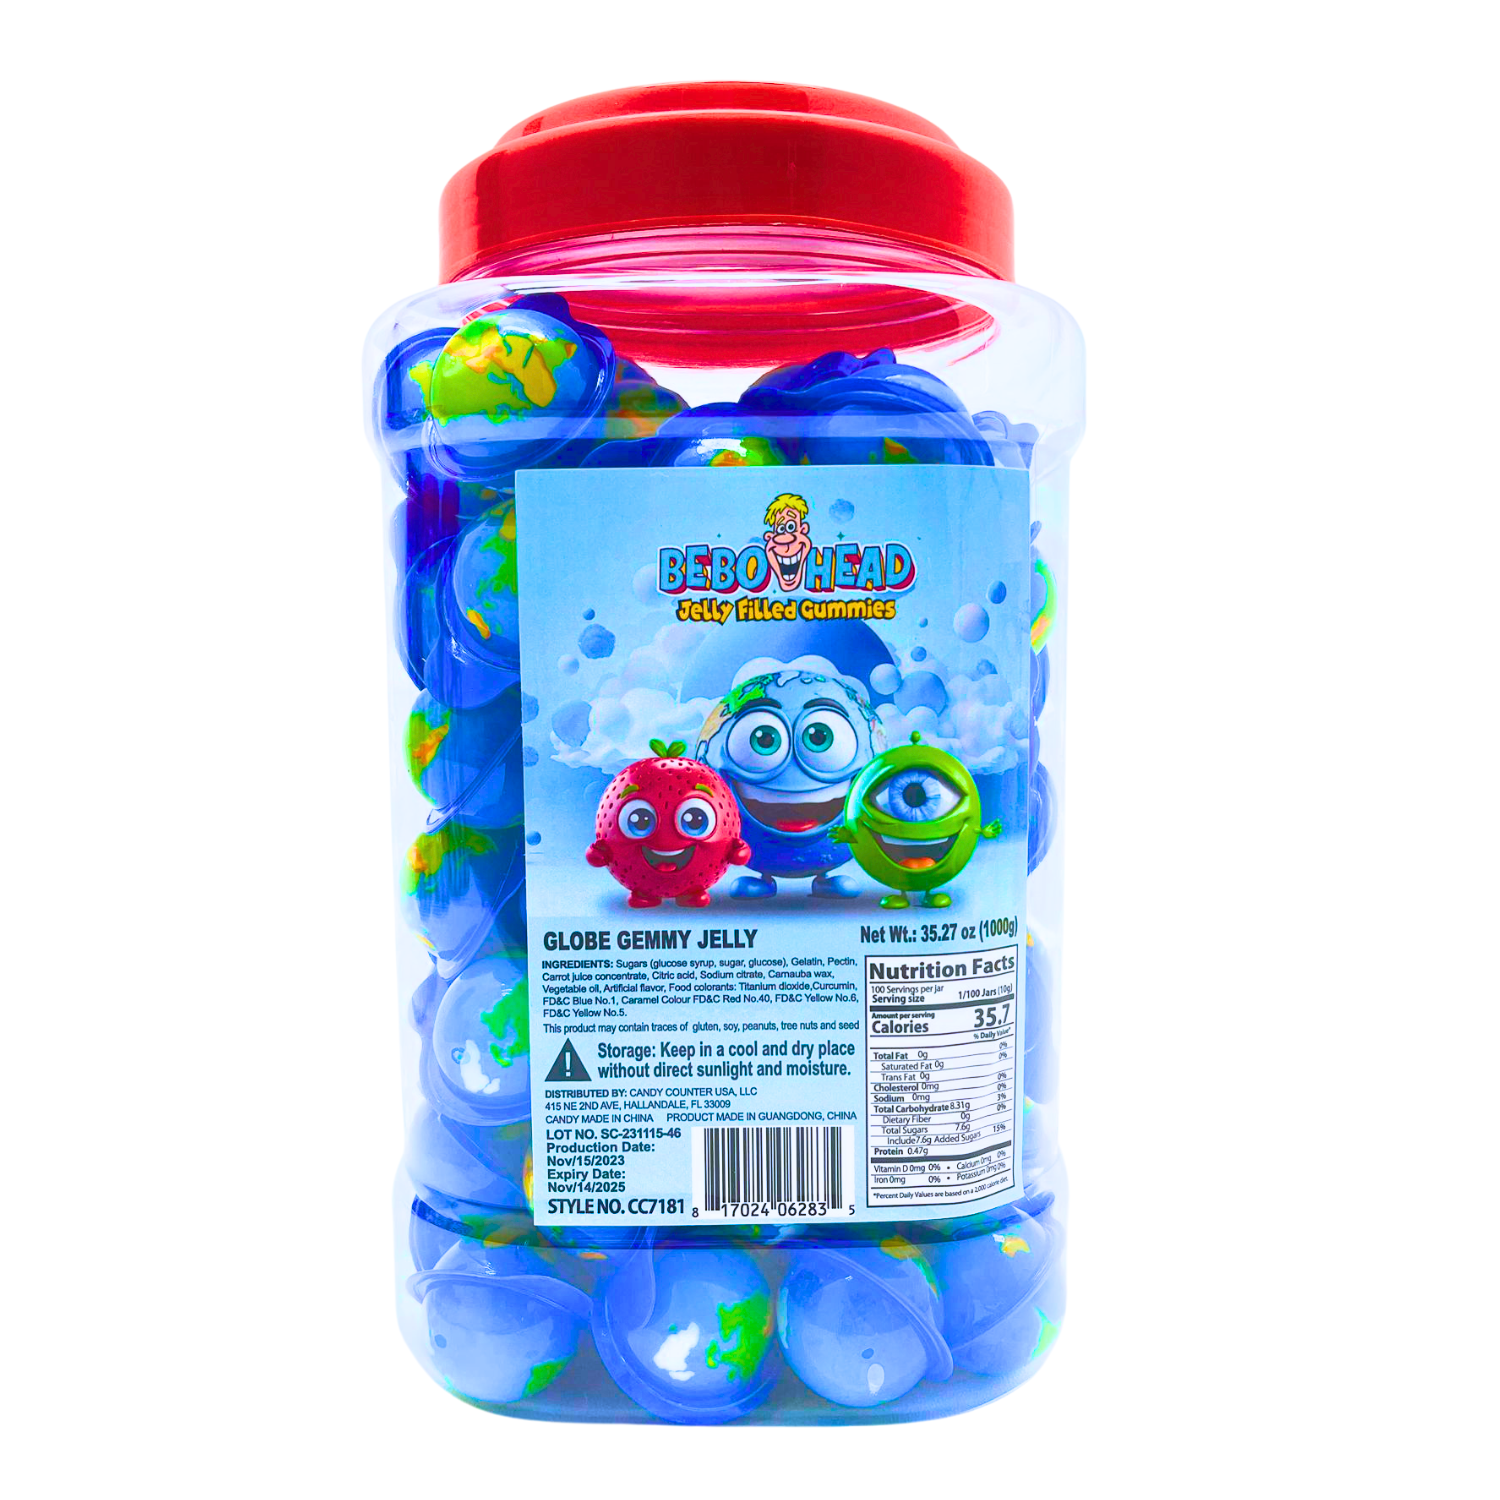 Globe Gummy Jelly